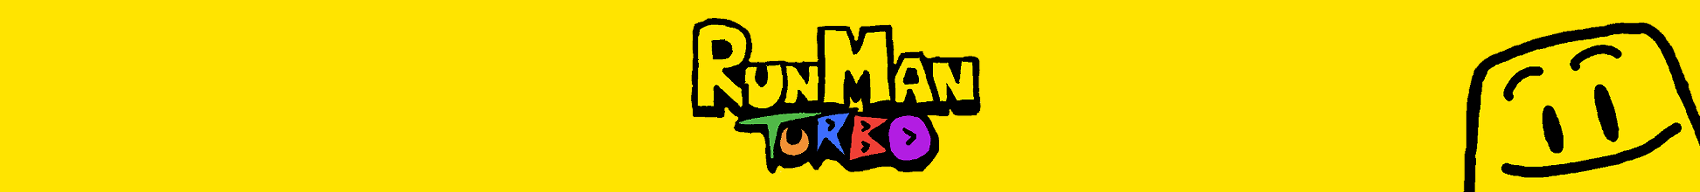 RunMan Turbo subreddit header